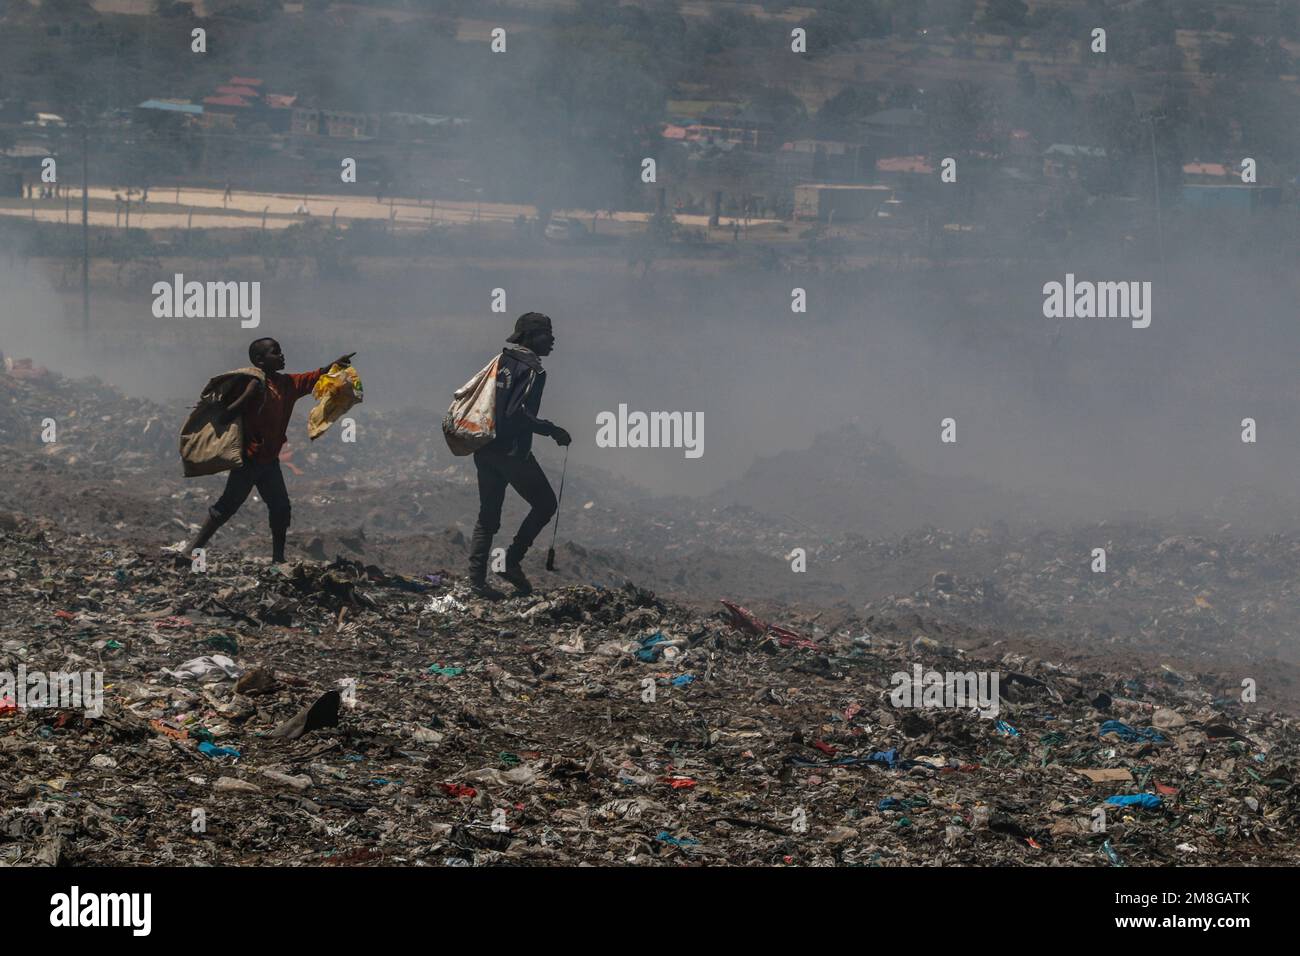 Junge Abfallsammler sammeln Abfälle, um sie in starkem Rauch zu recyceln, indem sie Müll auf dem Hauptlagerplatz von Nakuru verbrennen. Da Abfälle selten getrennt und stark mit allen Arten von Abfall vermischt werden, kann das Verbrennen potenziell giftige Dämpfe erzeugen, die ein Problem für die öffentliche Gesundheit darstellen und auch zum Klimawandel beitragen können. Gemeinden, die in der Nähe von Mülldeponien arbeiten und leben, wo Müll offen verbrannt wird, sind dem Risiko von Atemwegserkrankungen und Krebs ausgesetzt. Frauen, die diesen Dämpfen ausgesetzt sind, können unter reproduktiven Gesundheitsproblemen leiden. Stockfoto